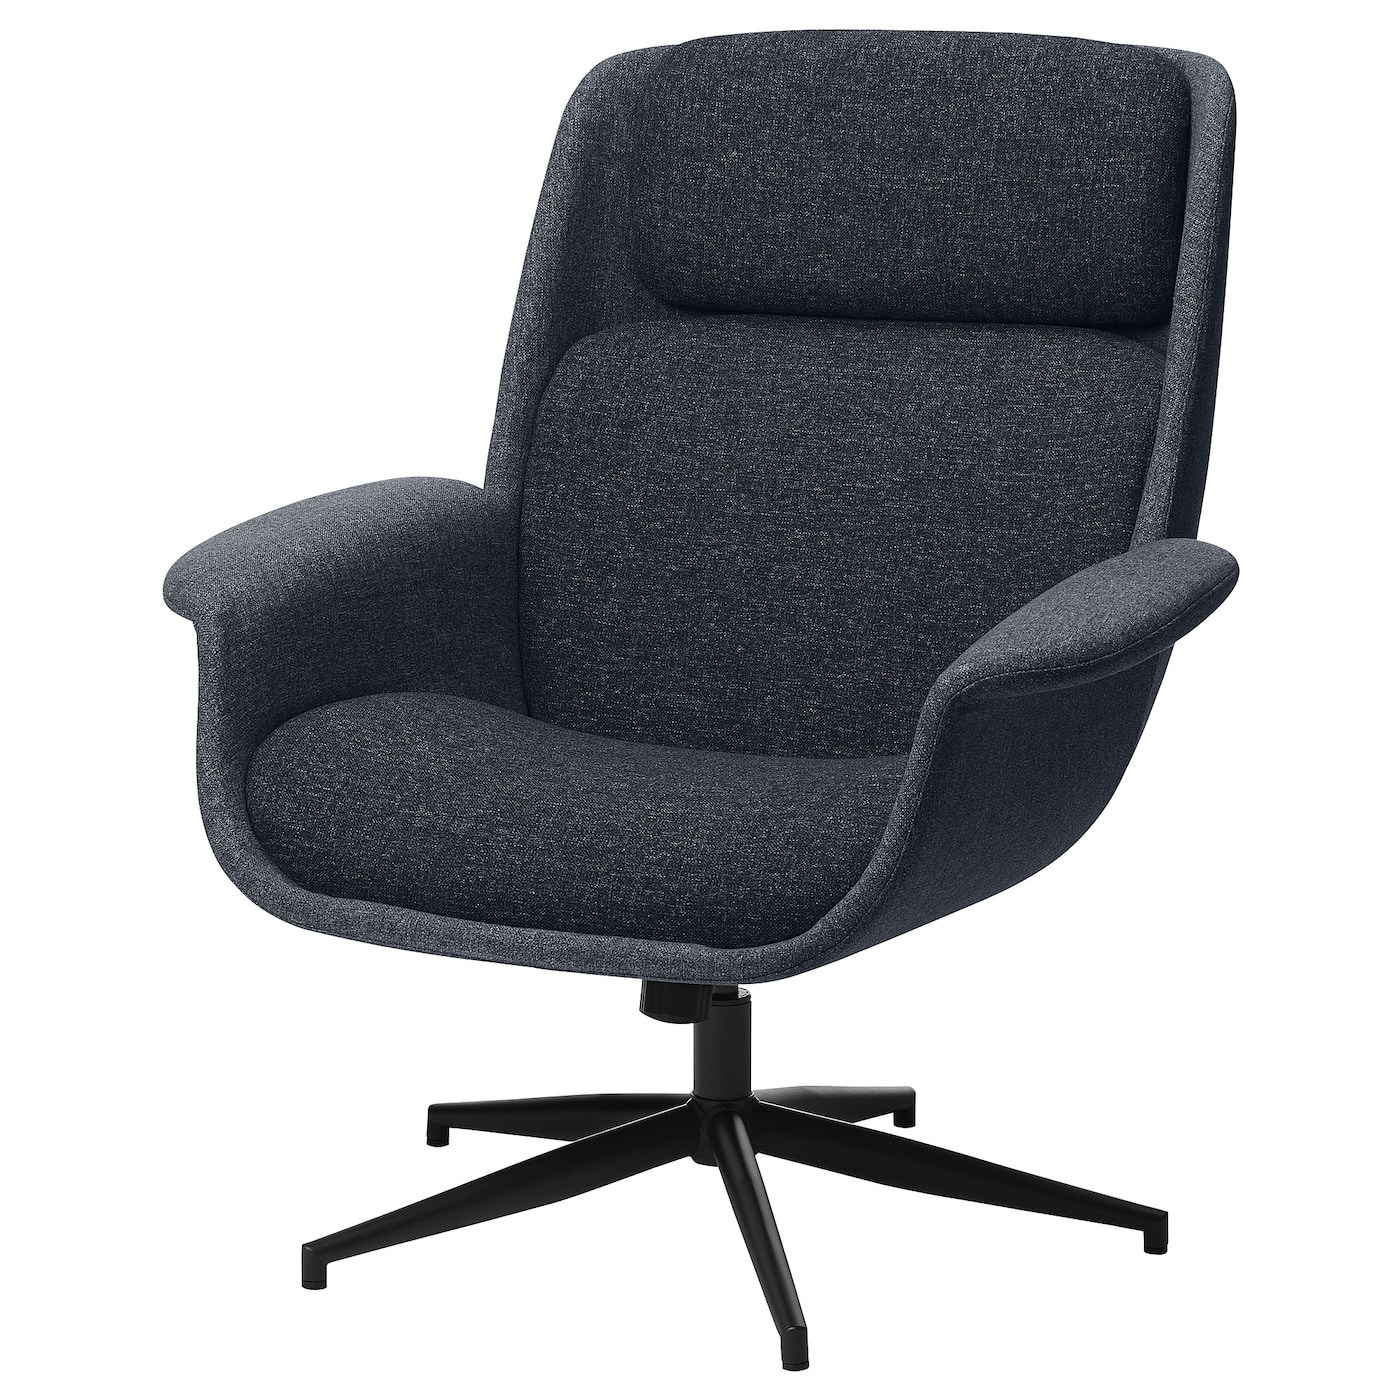 ЭЛЕБИ Вращающееся кресло, Гуннаред средний серый/темно-серый ÄLEBY IKEA кресло офисное вращающееся wapong единый размер белый